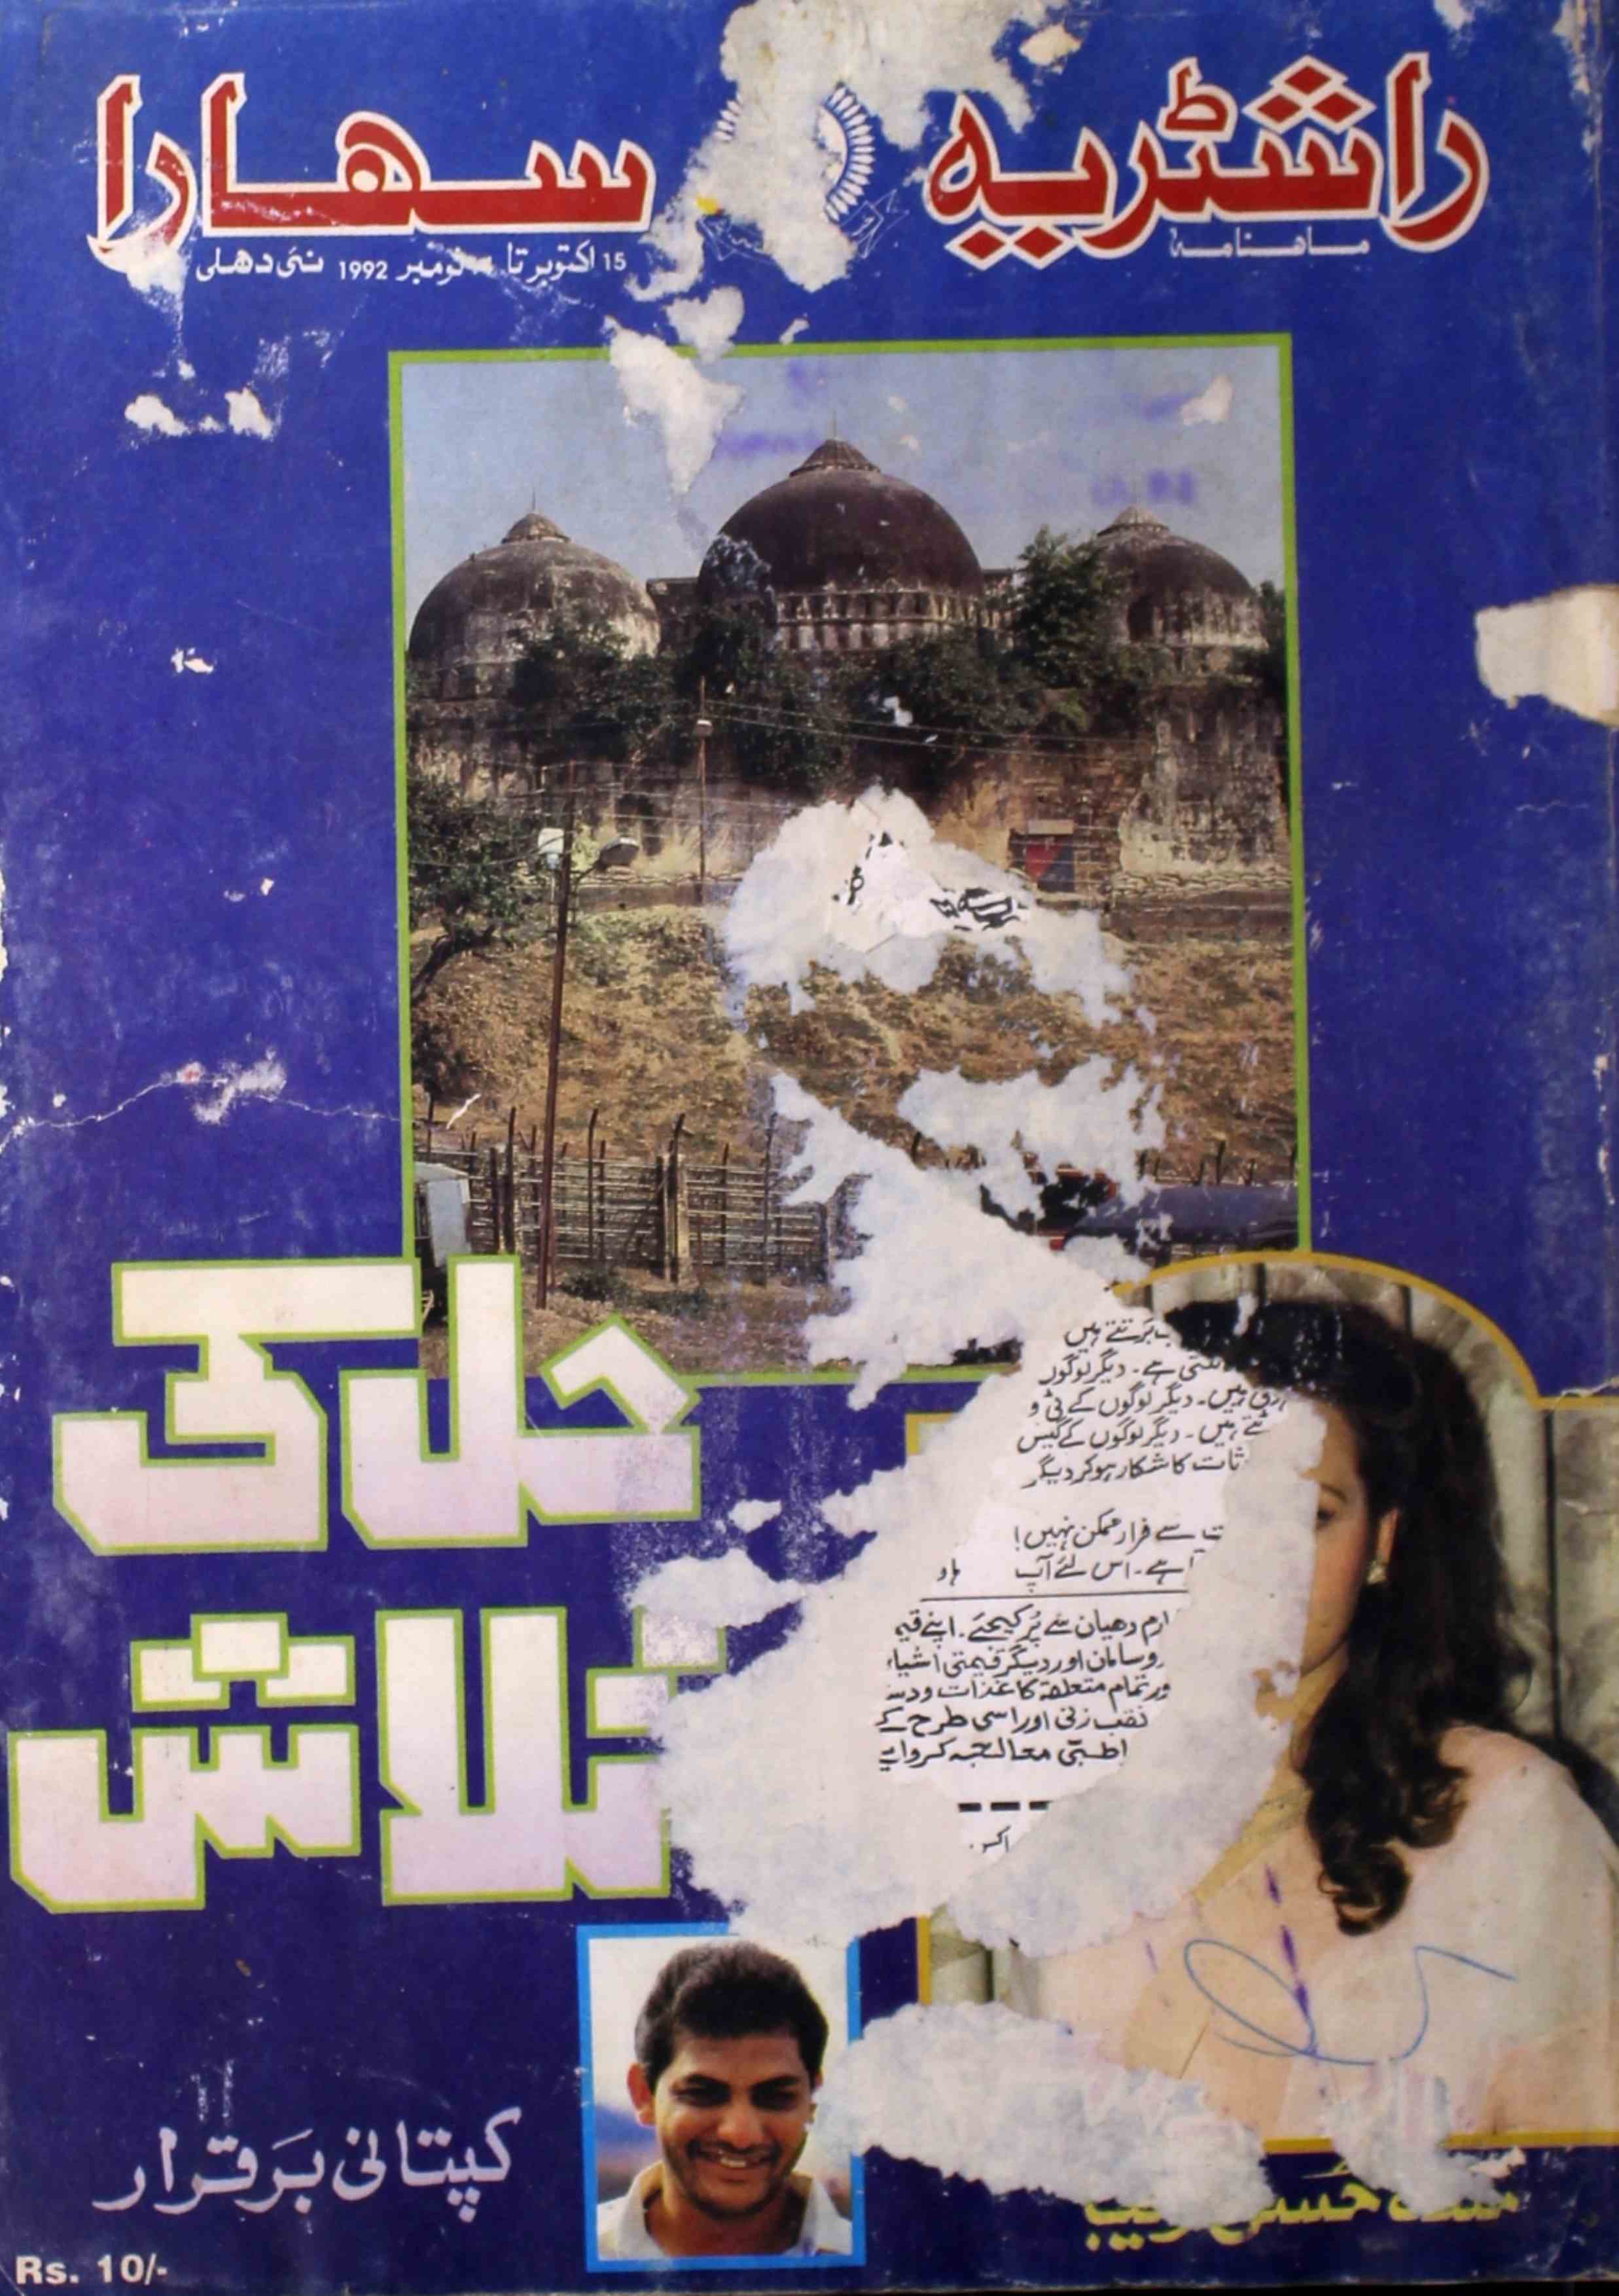 Rashtriya Sahara Jild 1 Shumara 12 November 1992-Svk-Shumara Number-012